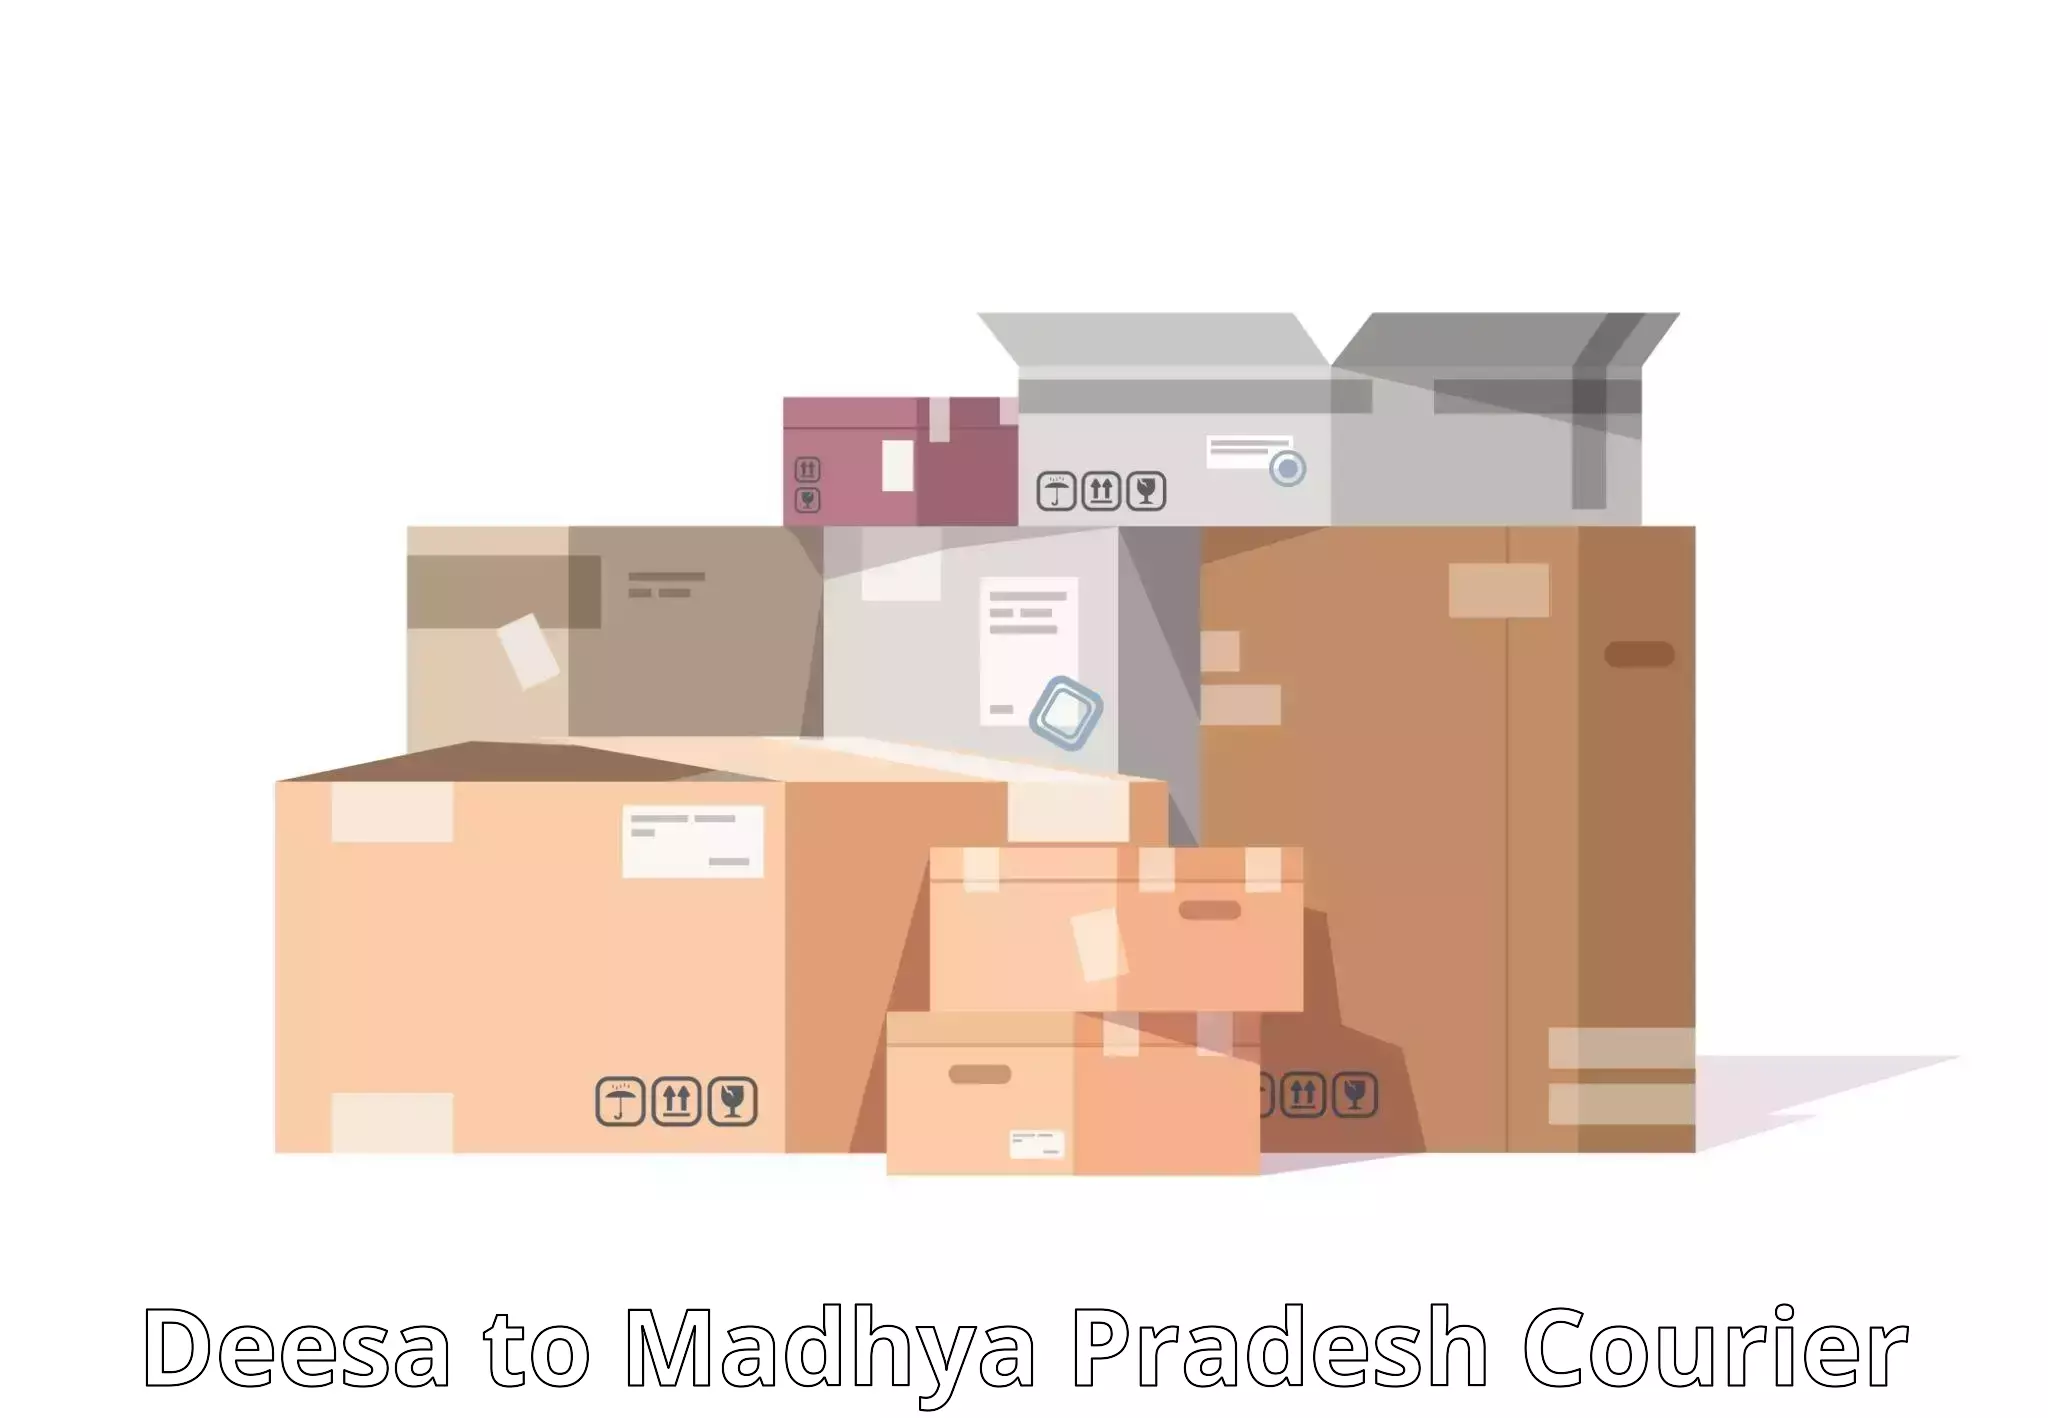 Cost-effective courier solutions Deesa to Ashoknagar